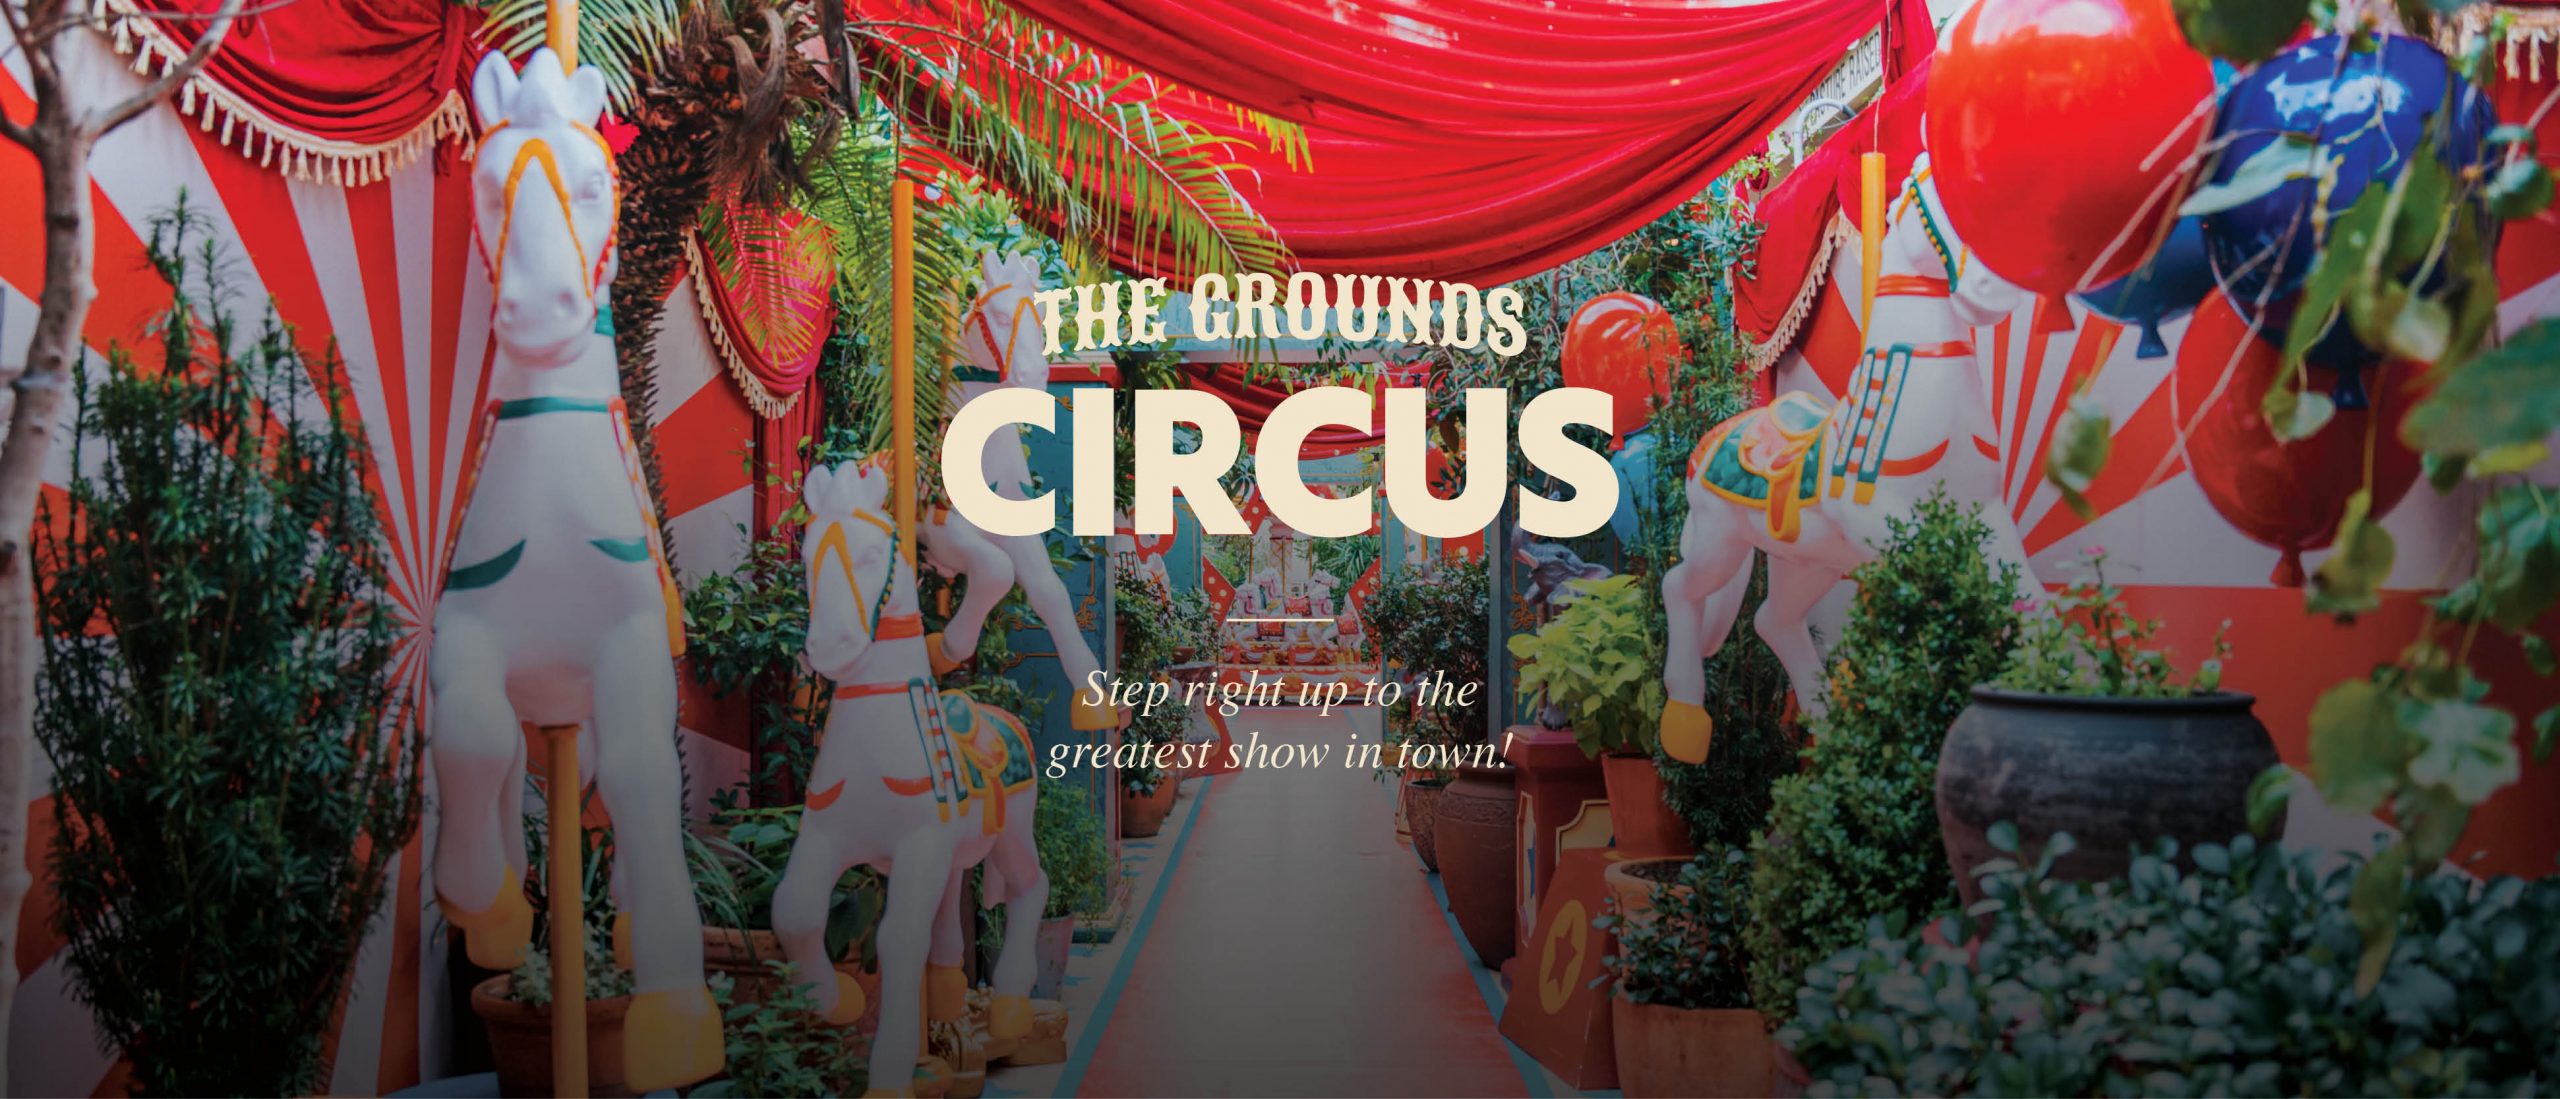 TheGrounds_Circus_banner-main